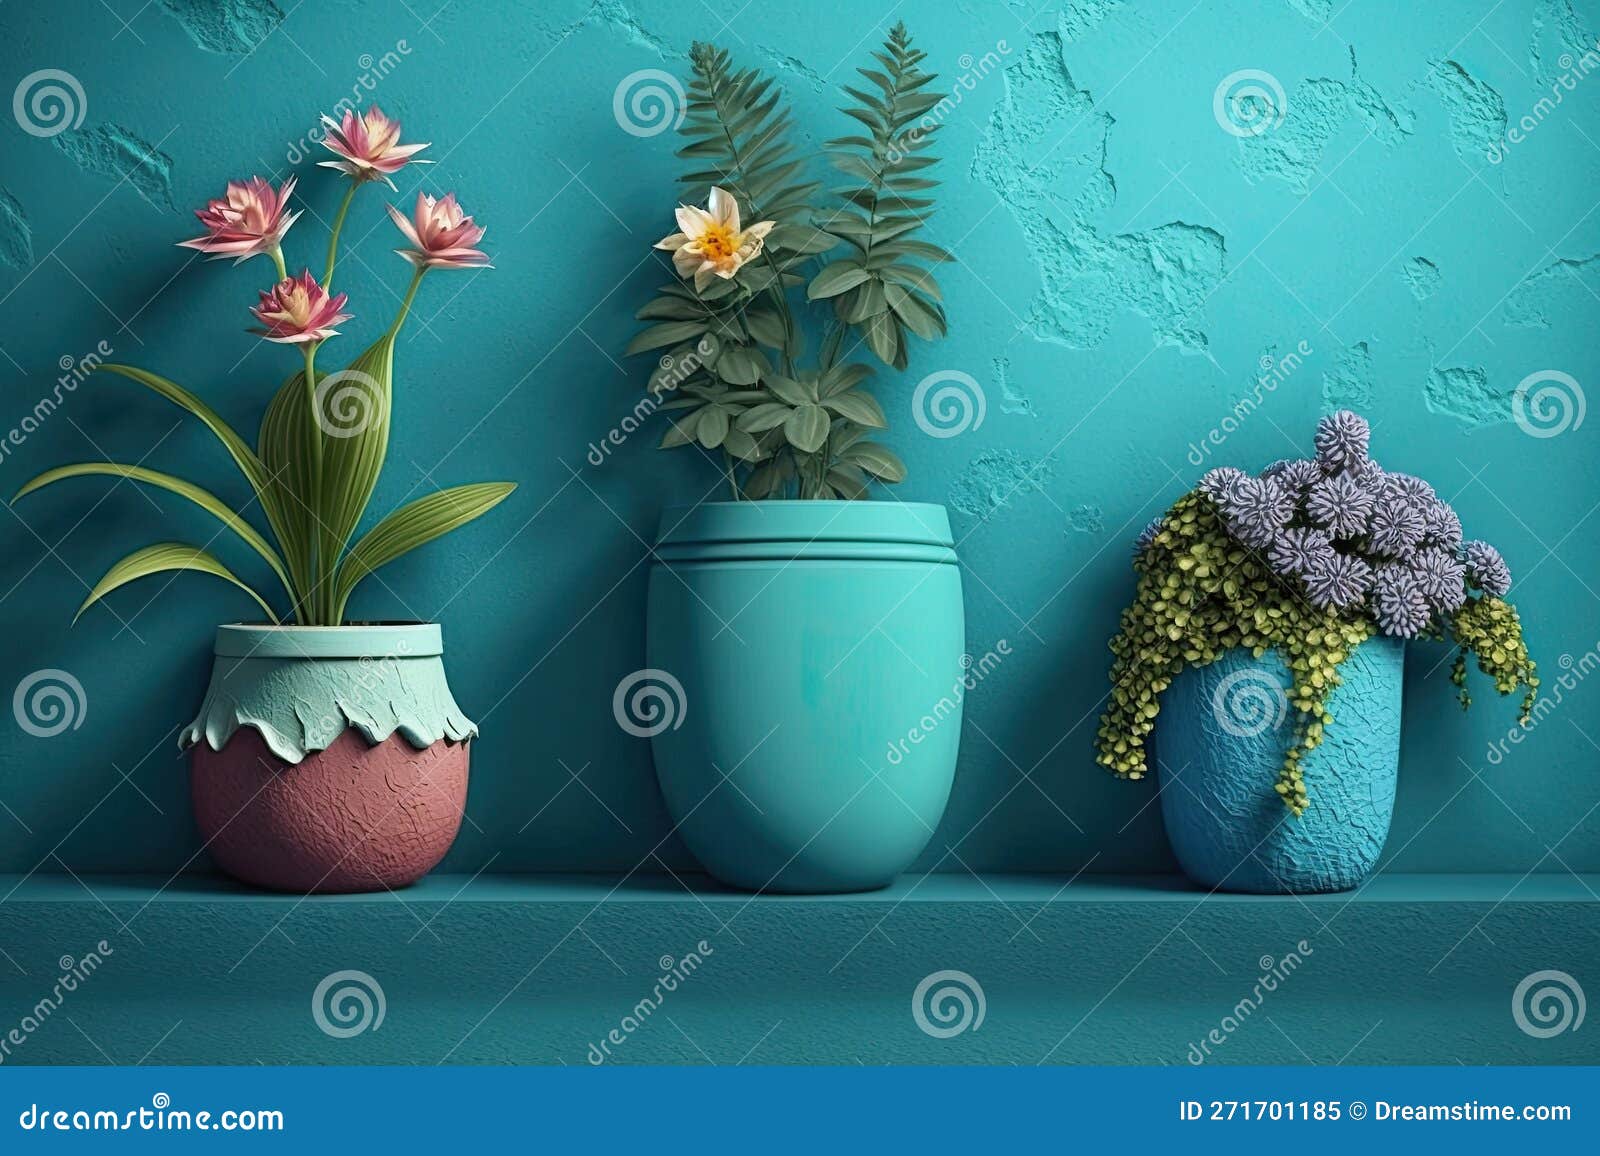 https://thumbs.dreamstime.com/z/flores-en-macetas-para-plantas-interiores-al-lado-de-una-pared-azul-creado-mediante-herramientas-ai-generativas-271701185.jpg